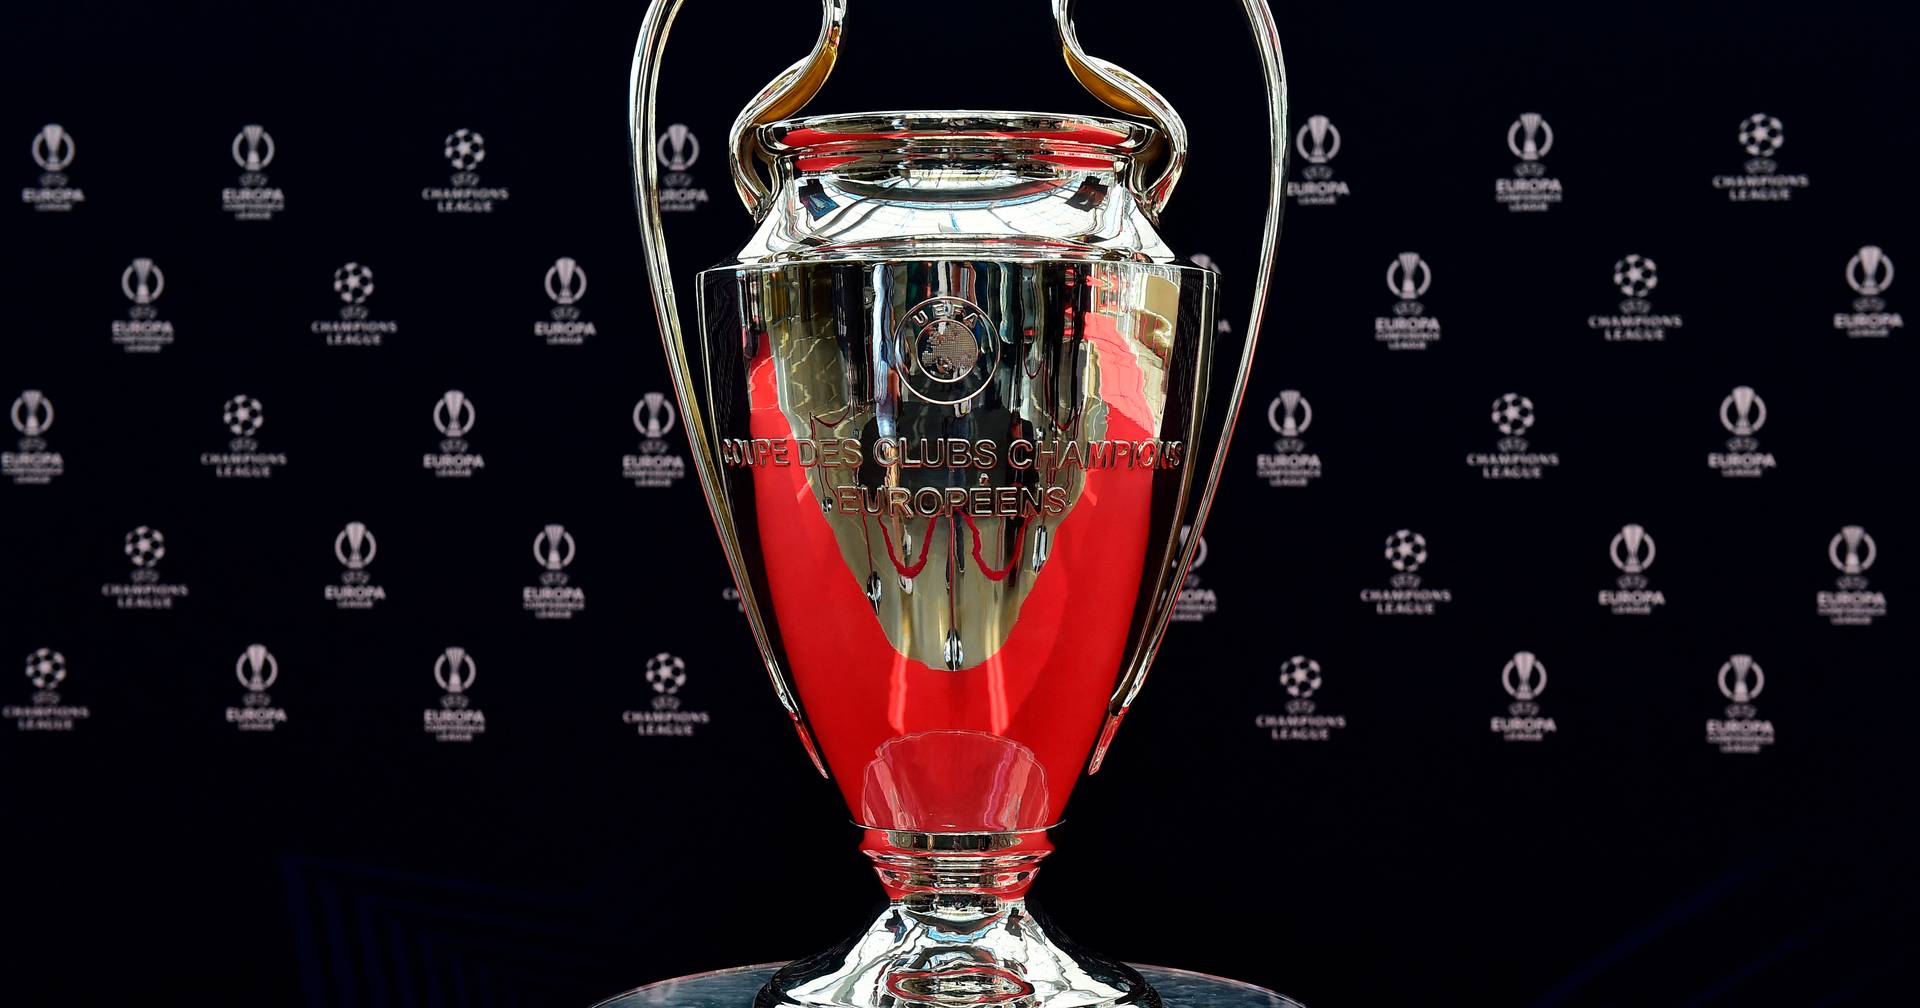 Oitavos-de-final da Champions League: conheça os adversários, UEFA  Champions League